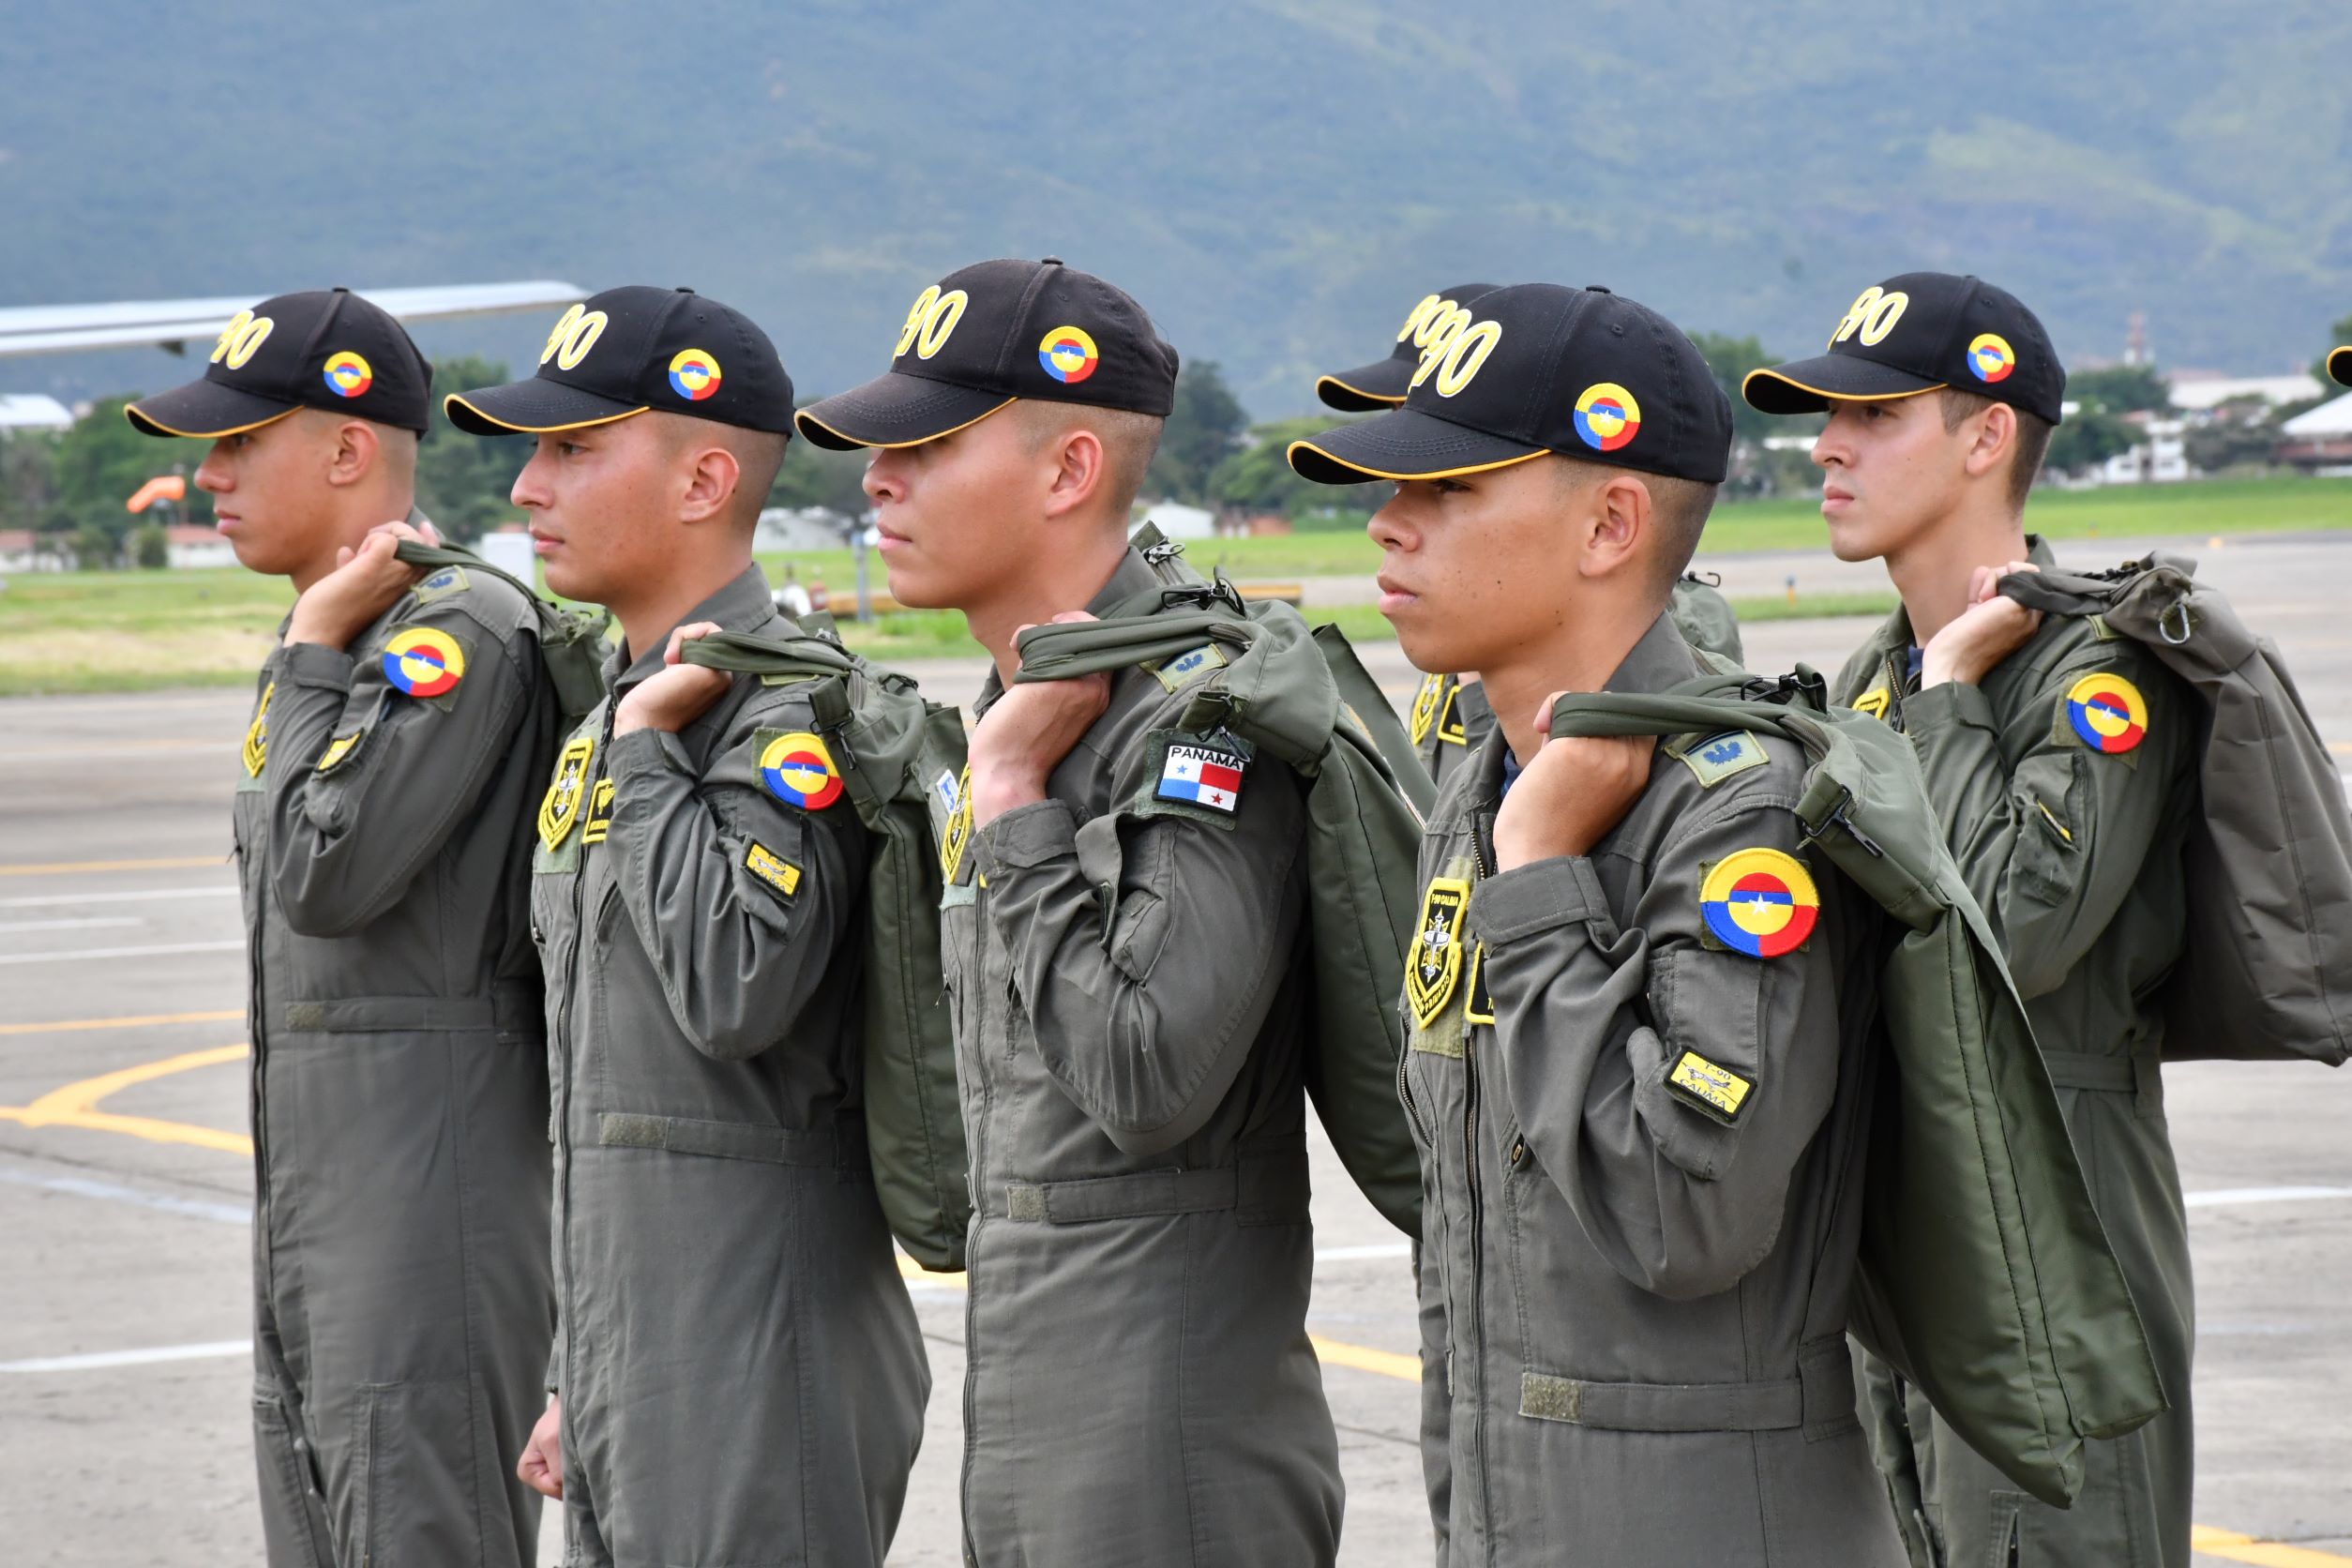 ocho Cadetes de tercer año del Curso de Regular de Oficiales No 96, demostraron la mística y disciplina que los representa en una de las fases más importantes dentro de su formación como futuros pilotos militares.